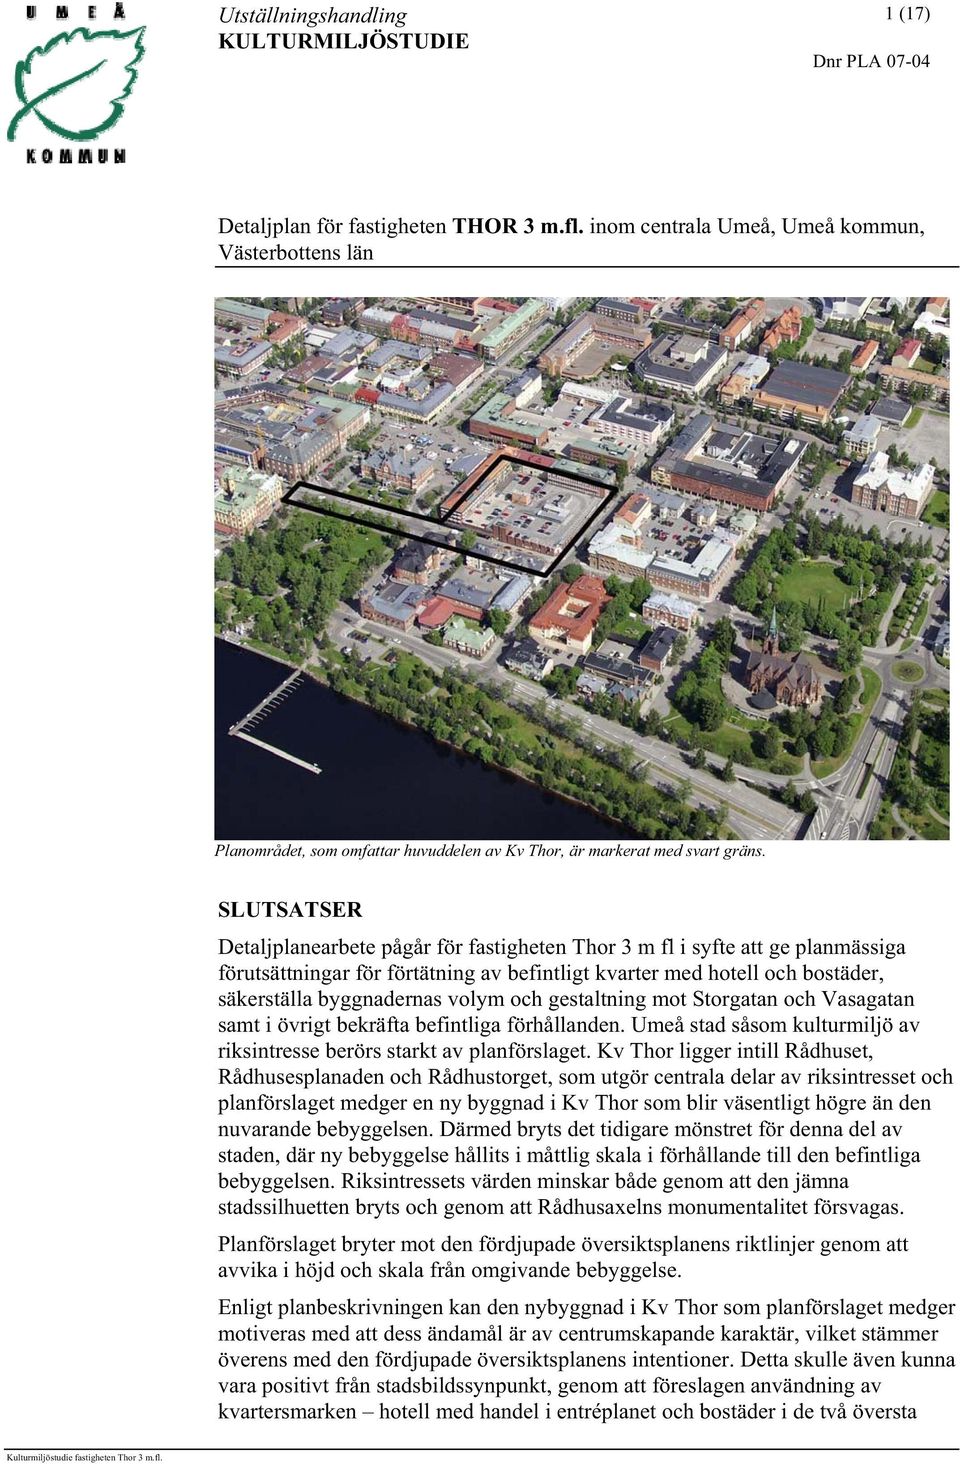 Utställningshandling KULTURMILJÖSTUDIE. Detaljplan för fastigheten THOR 3  . inom centrala Umeå, Umeå kommun, Västerbottens län - PDF Free Download